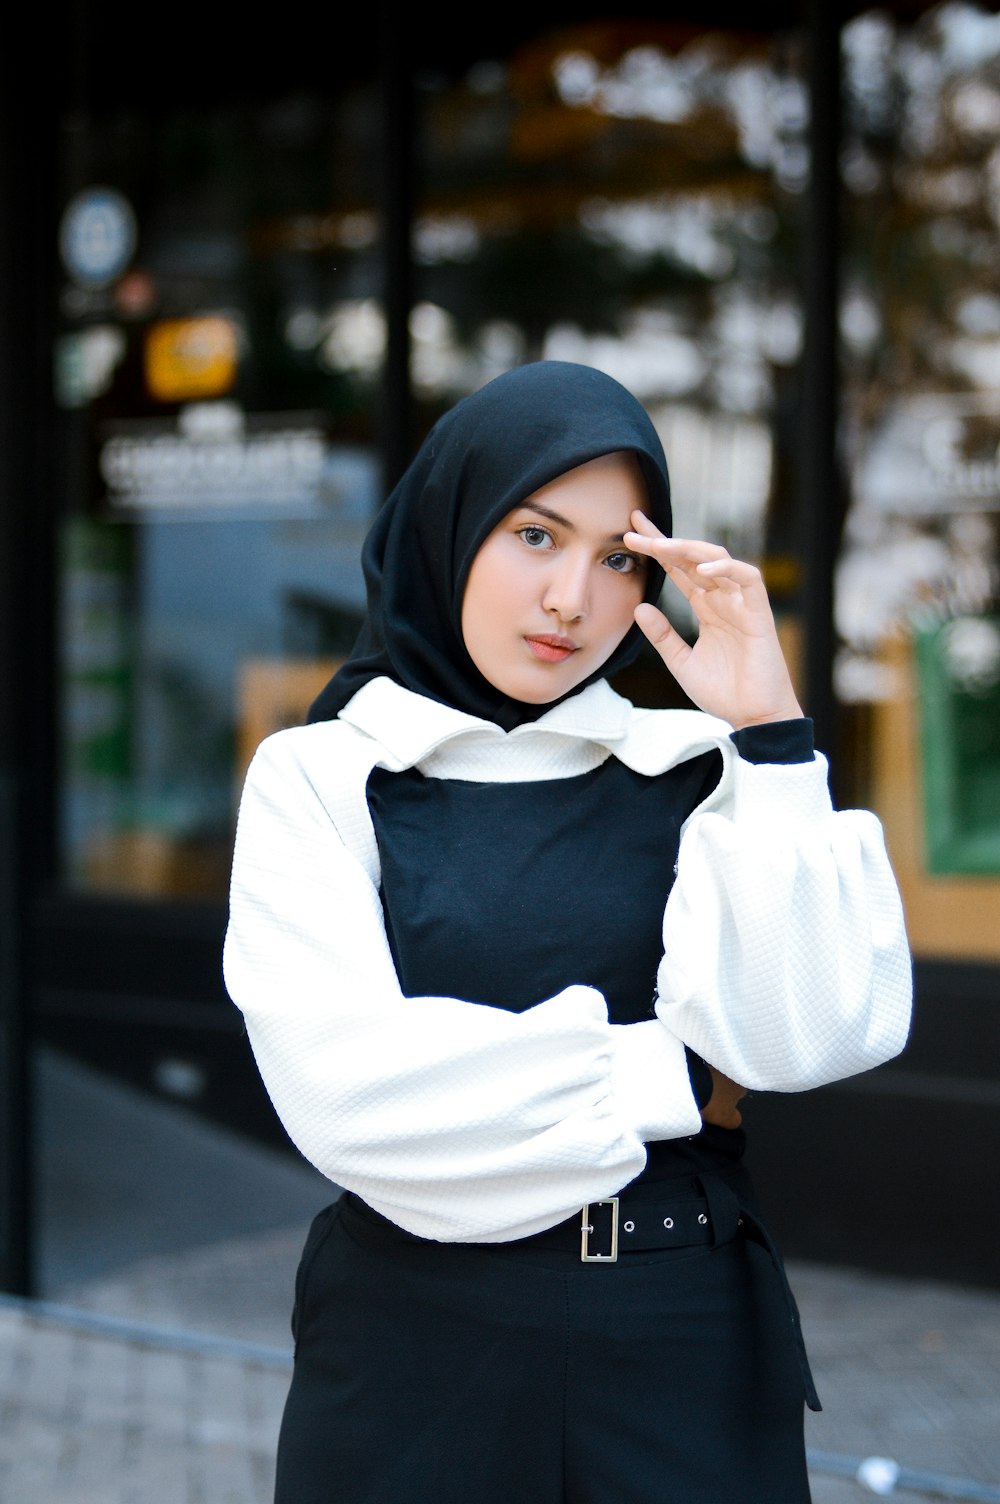 a woman in a black head scarf